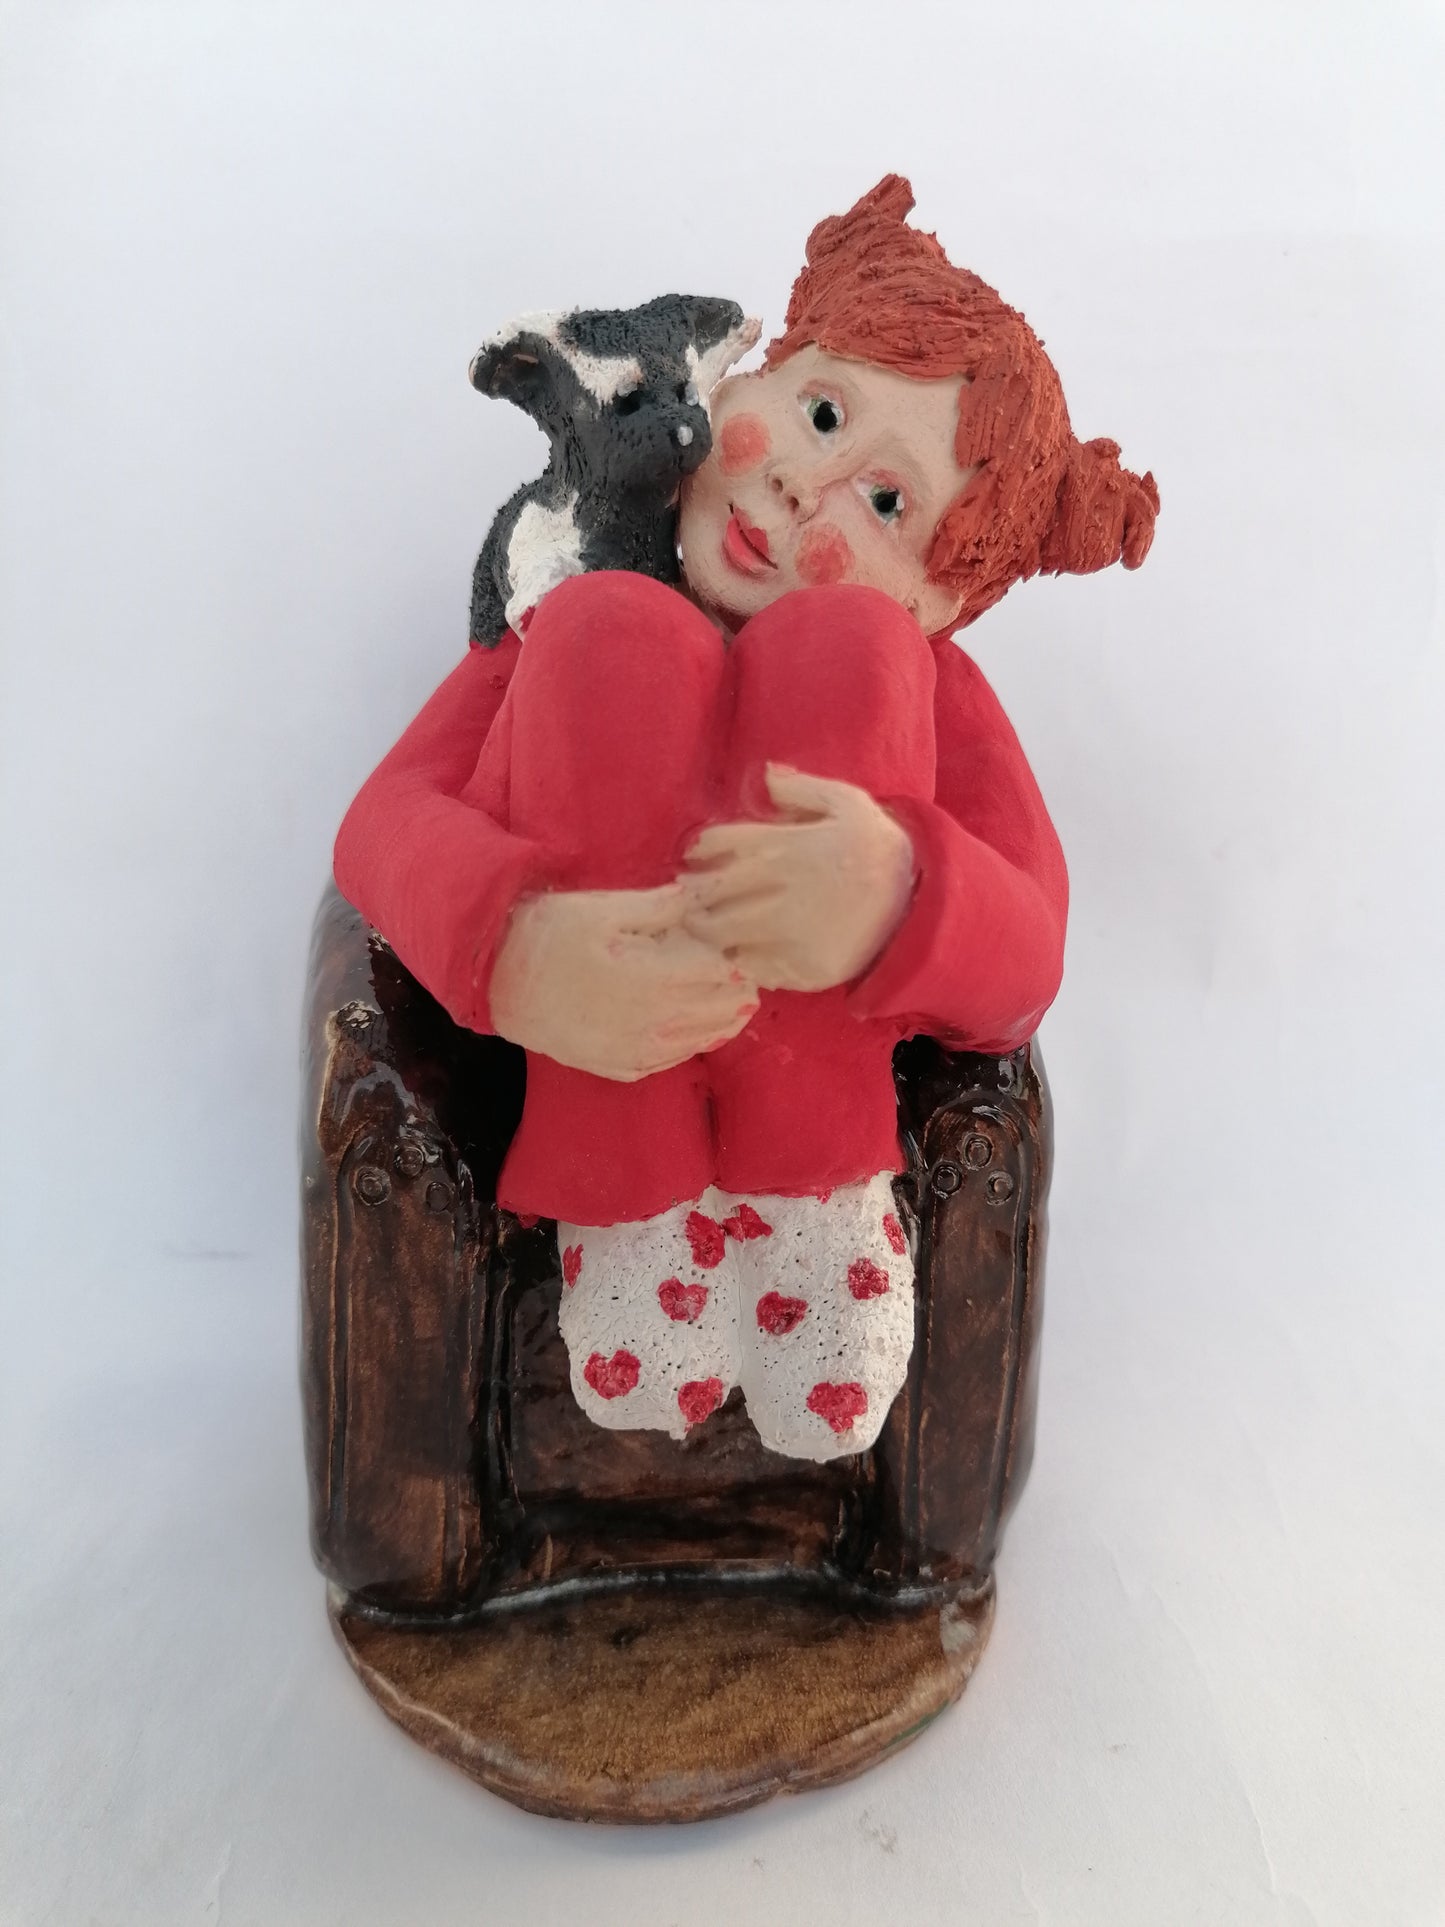 La Petite Baigneuse Rousse dans son pyjama framboise recroquevillée dans son fauteuil By Sandrine De Zorzi